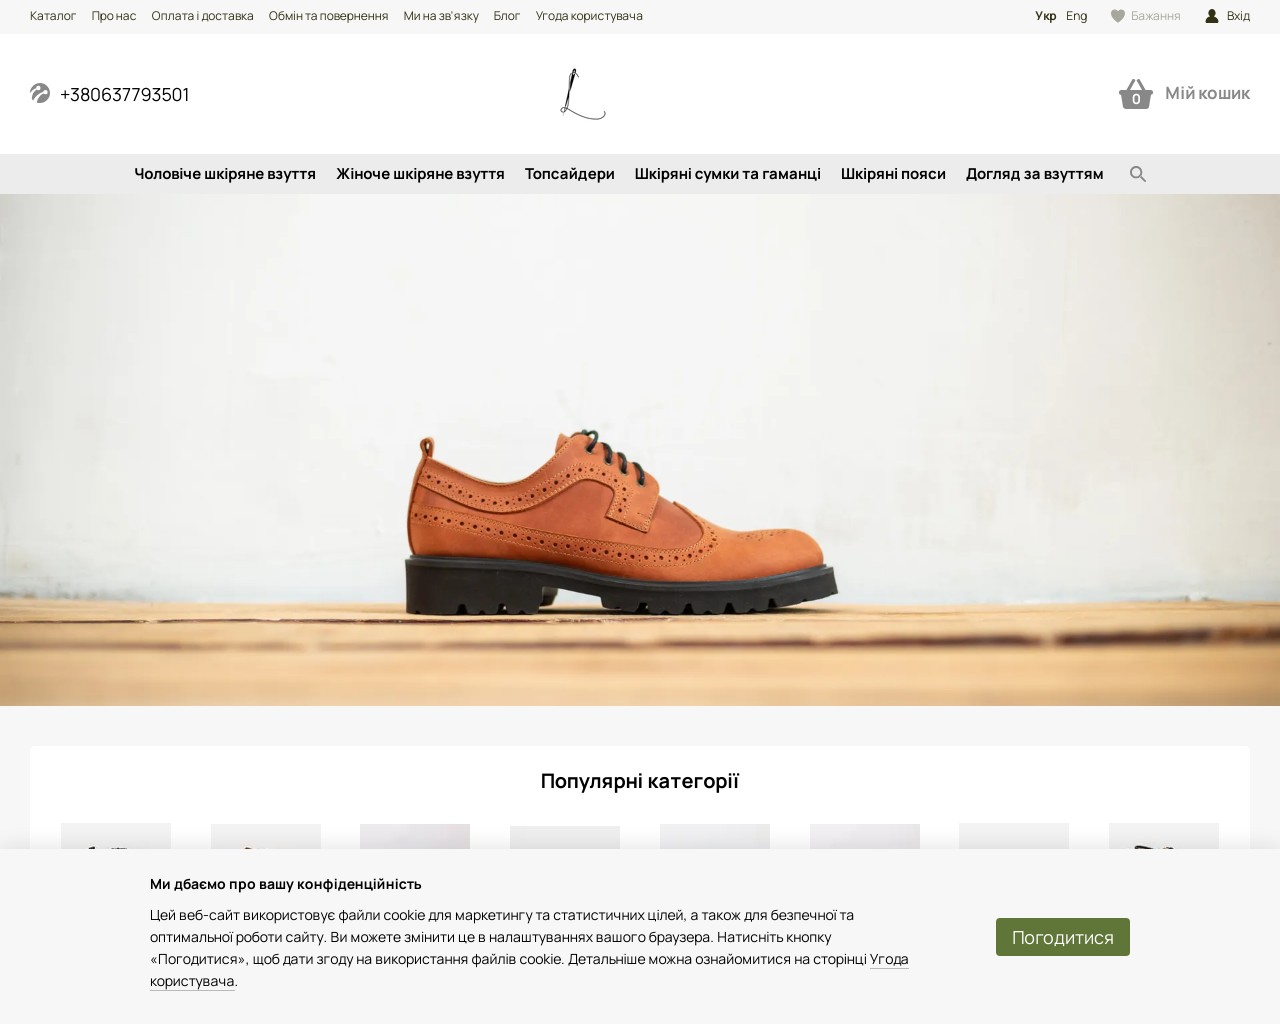 Изображение скриншота сайта - Leonchenko - производство кожаной обуви ручной работы